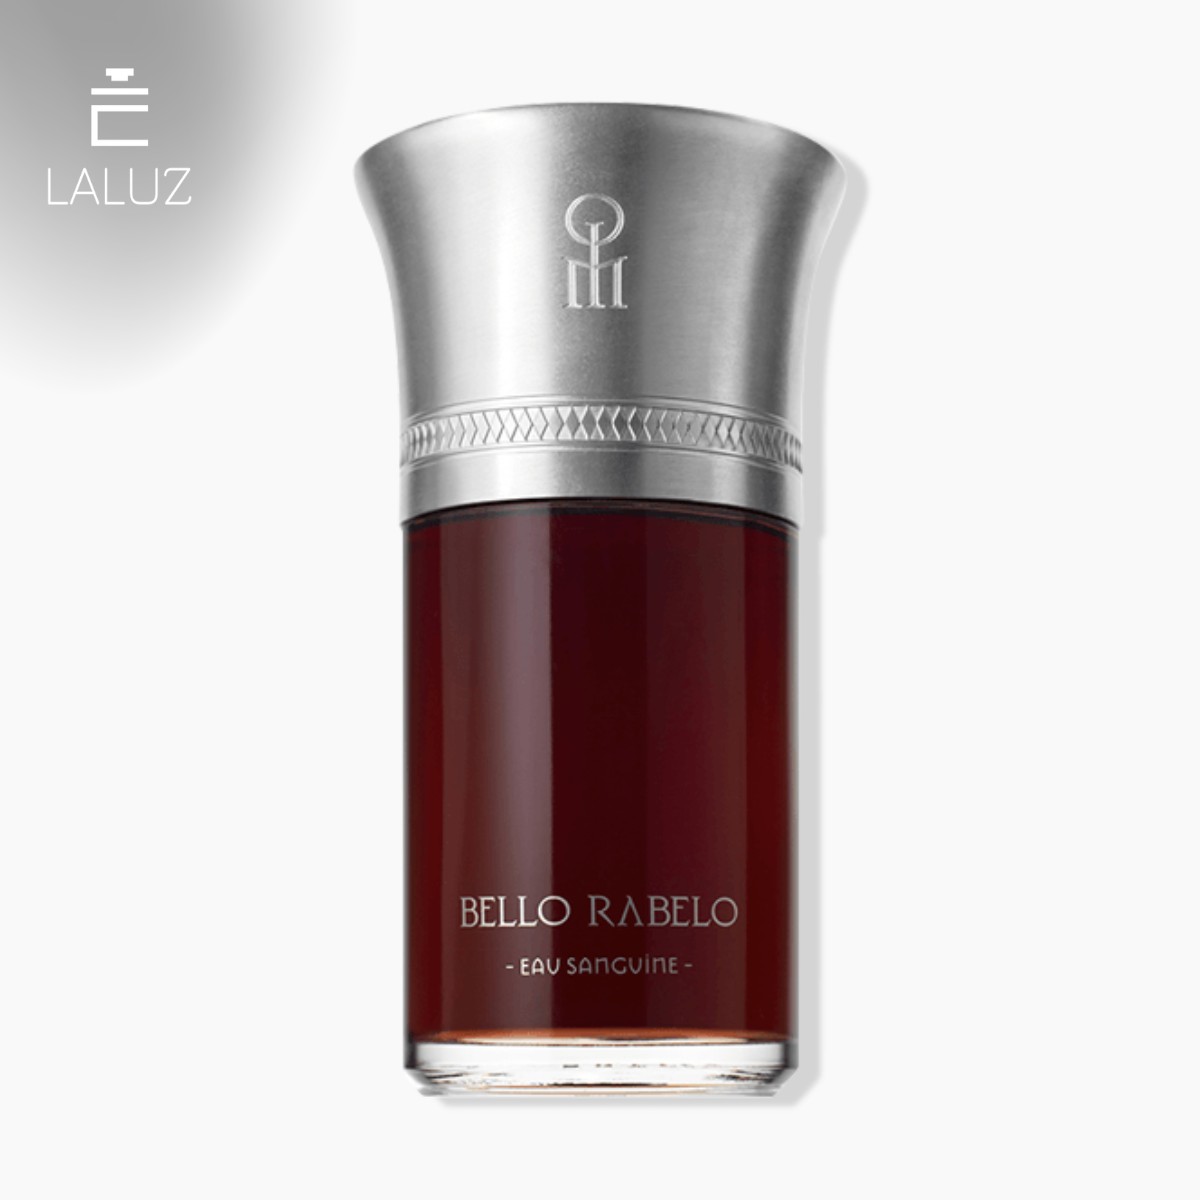 Perfume Liquides Imaginaires Bello Rabelo phù hợp với những người yêu thích các mùi hương độc đáo